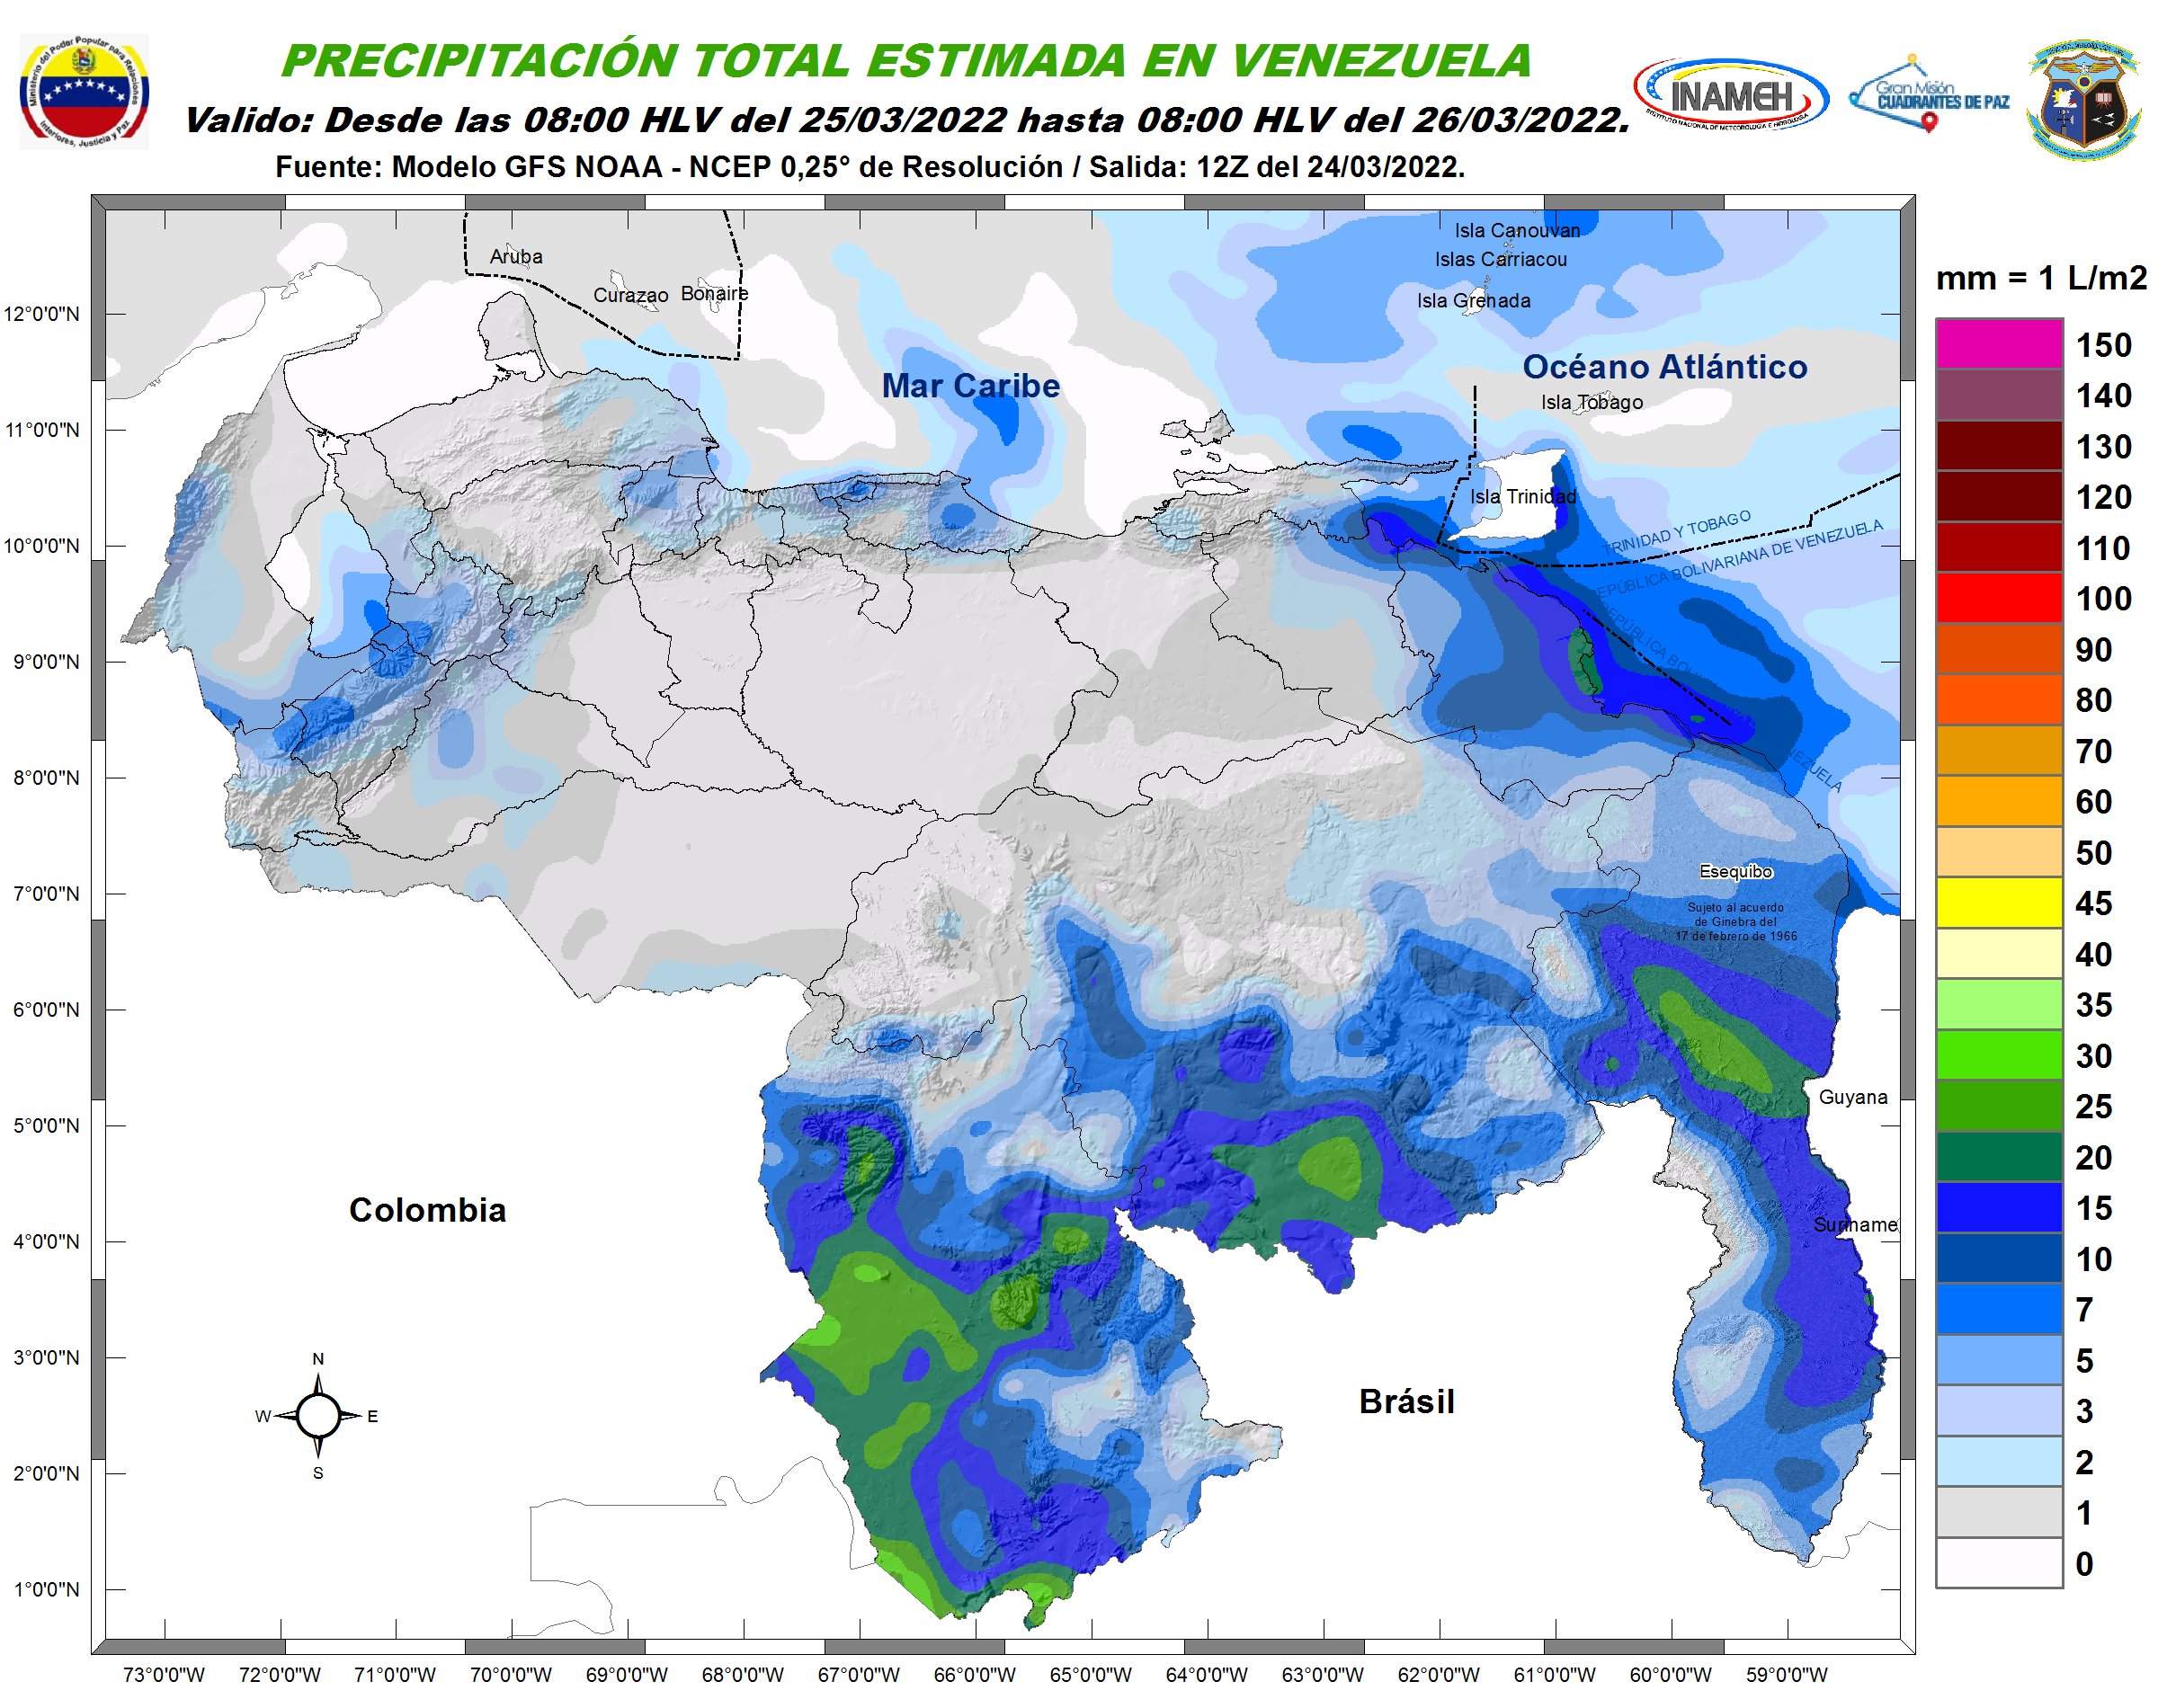 Inameh prevé descargas eléctricas y nubosidad en algunos estados de Venezuela #25Mar